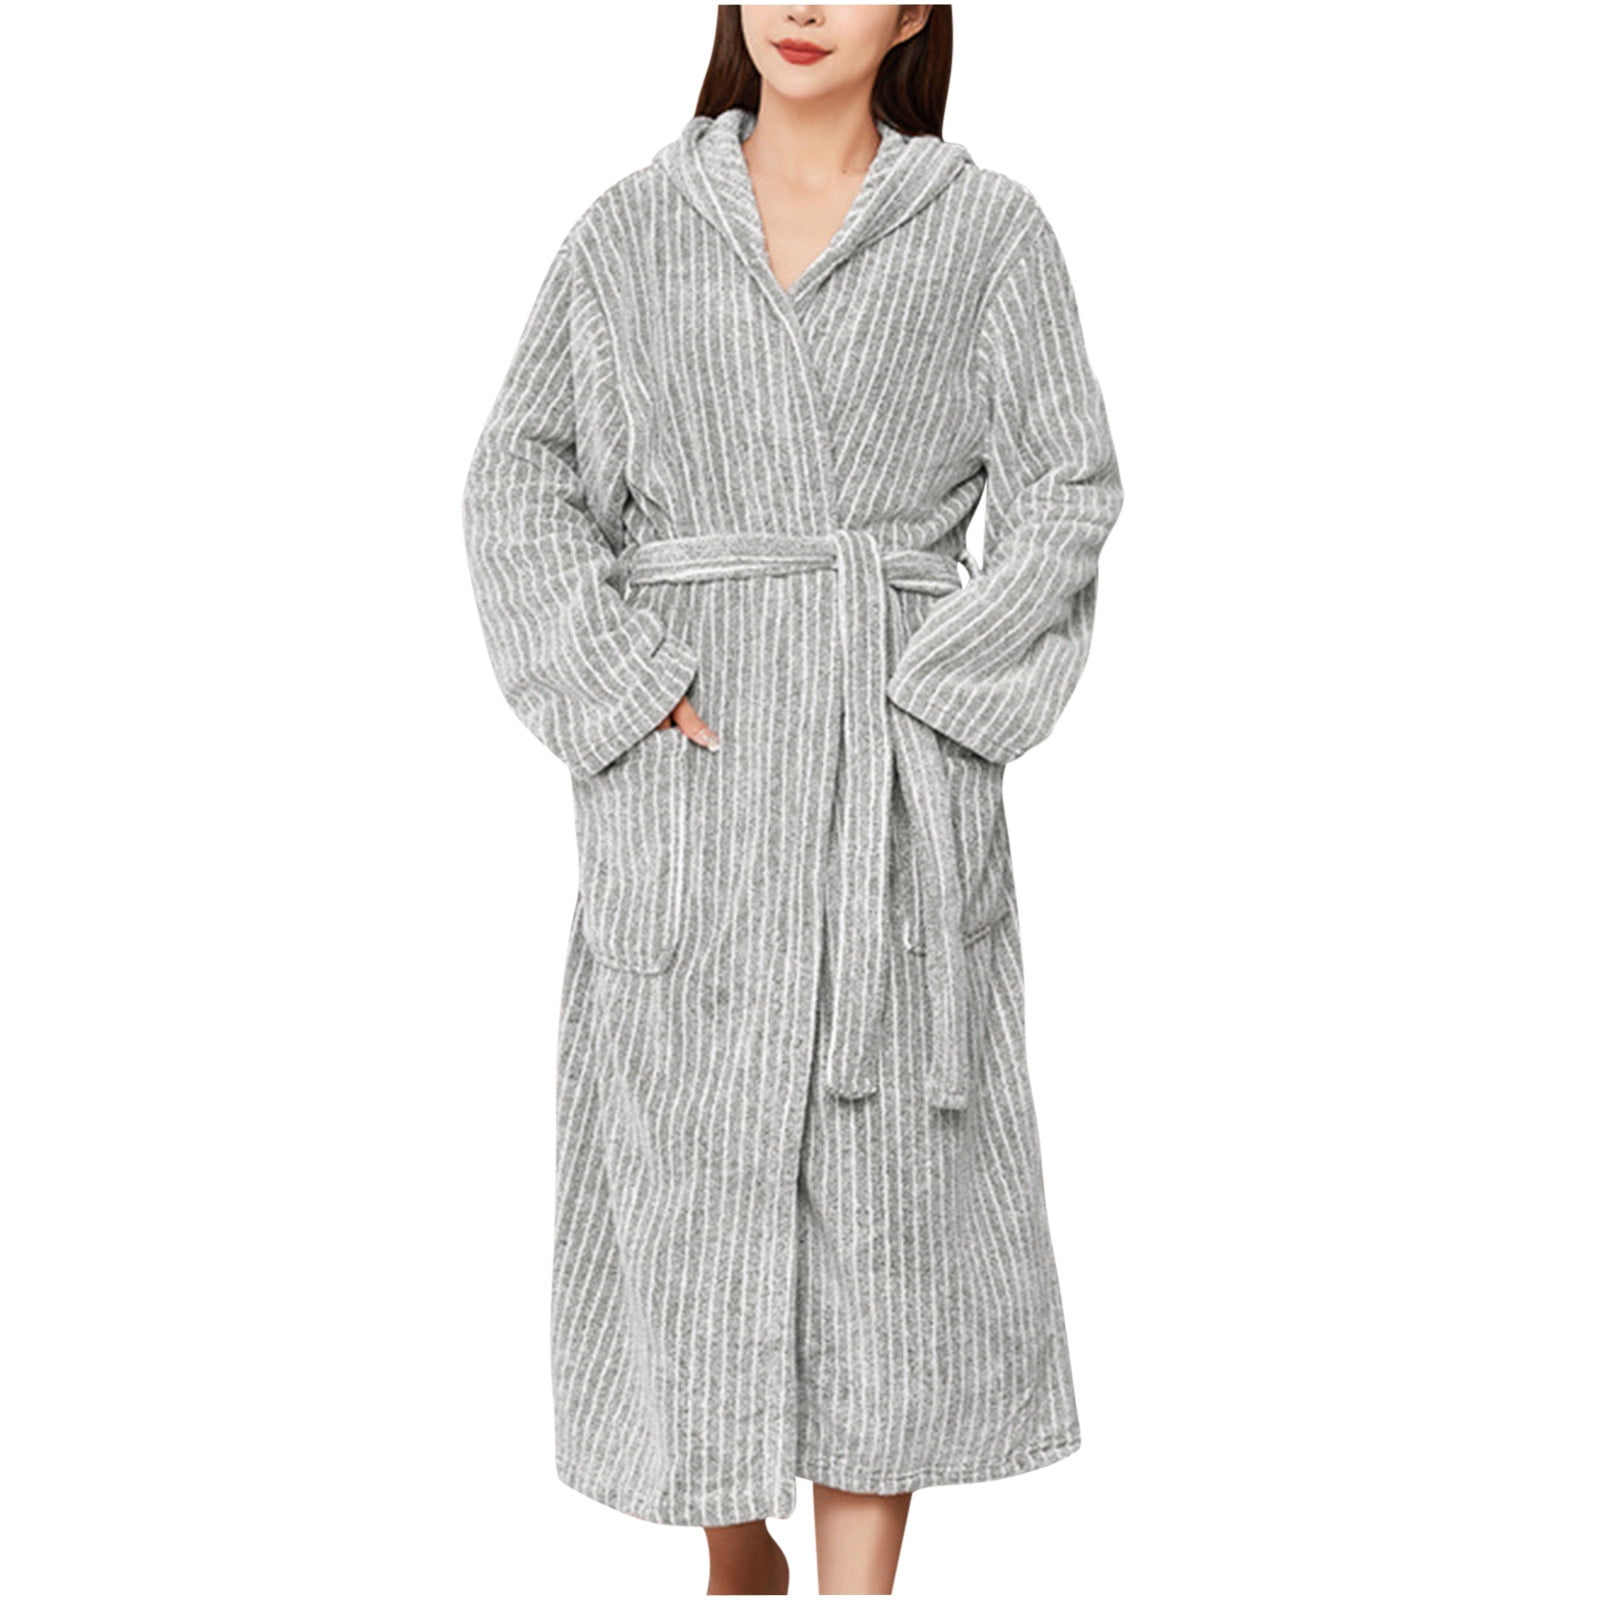 Hvyesh Winter Robe for Women Thick Thermal Full Length Bathrobe